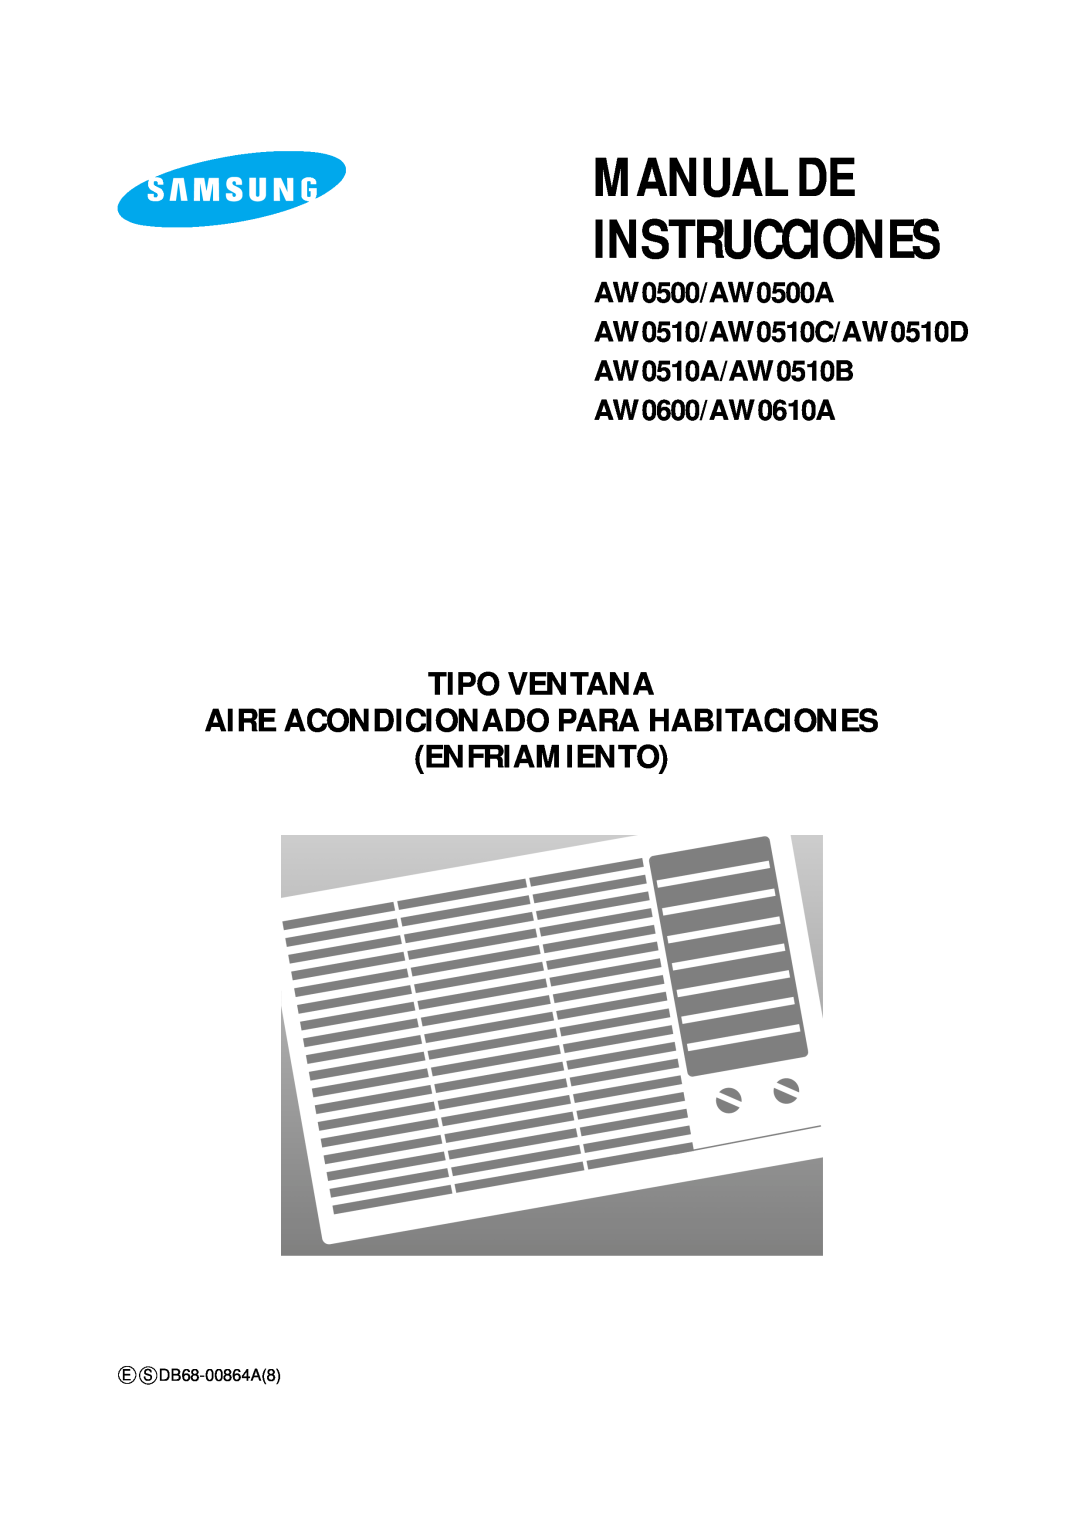 Samsung AW0510C manual Manual De, Instrucciones, Tipo Ventana Aire Acondicionado Para Habitaciones, Enfriamiento 